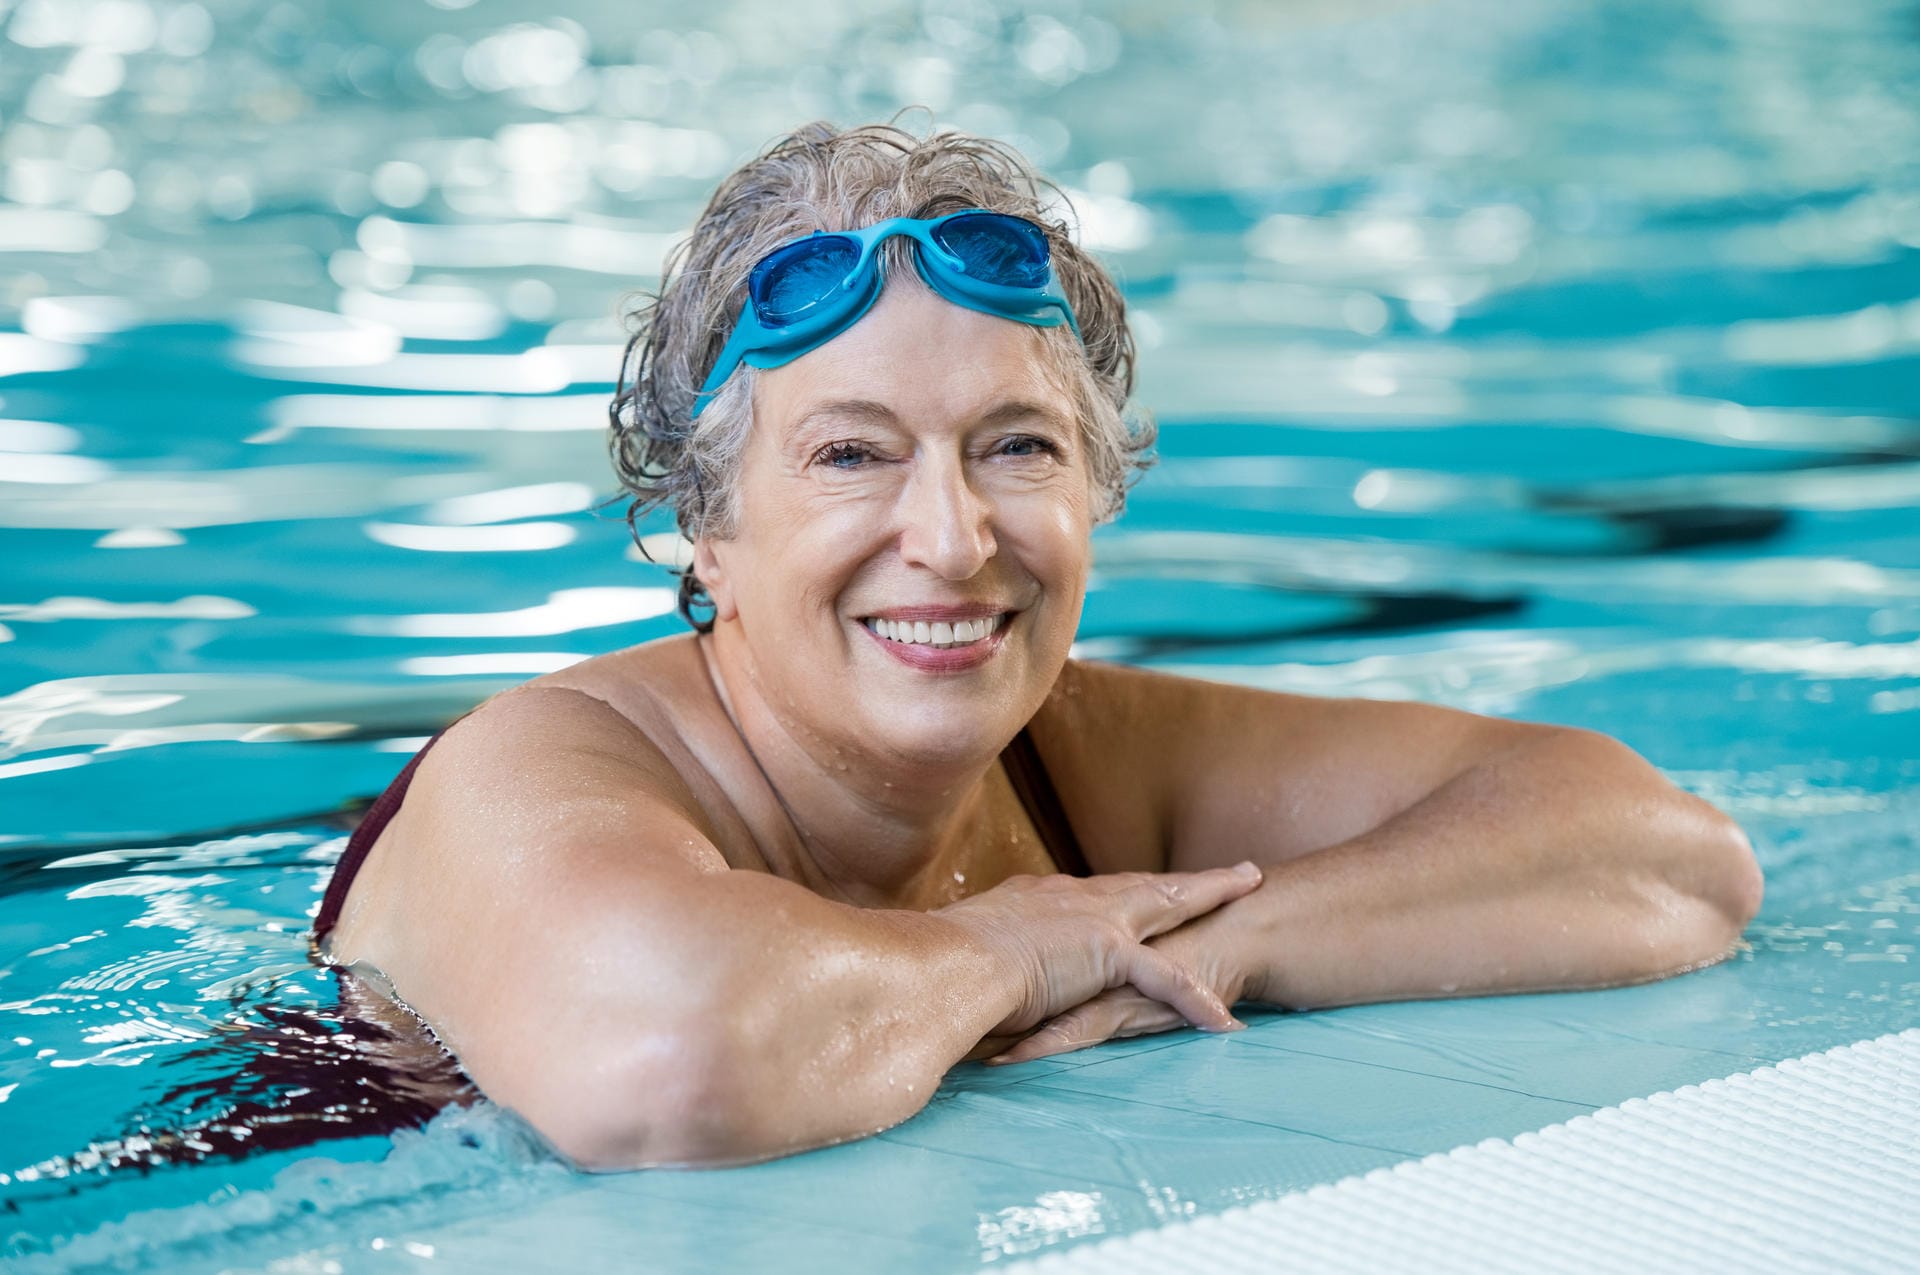 Schwimmen ist wegen des sehr geringen Verletzungsrisikos ein gesunder Ausdauersport für Senioren. Er stärkt das Herzkreislauf-System und trainiert die Muskeln, ohne dabei die Gelenke zu beanspruchen. Daher ist Schwimmen auch für übergewichtige Menschen sehr geeignet.